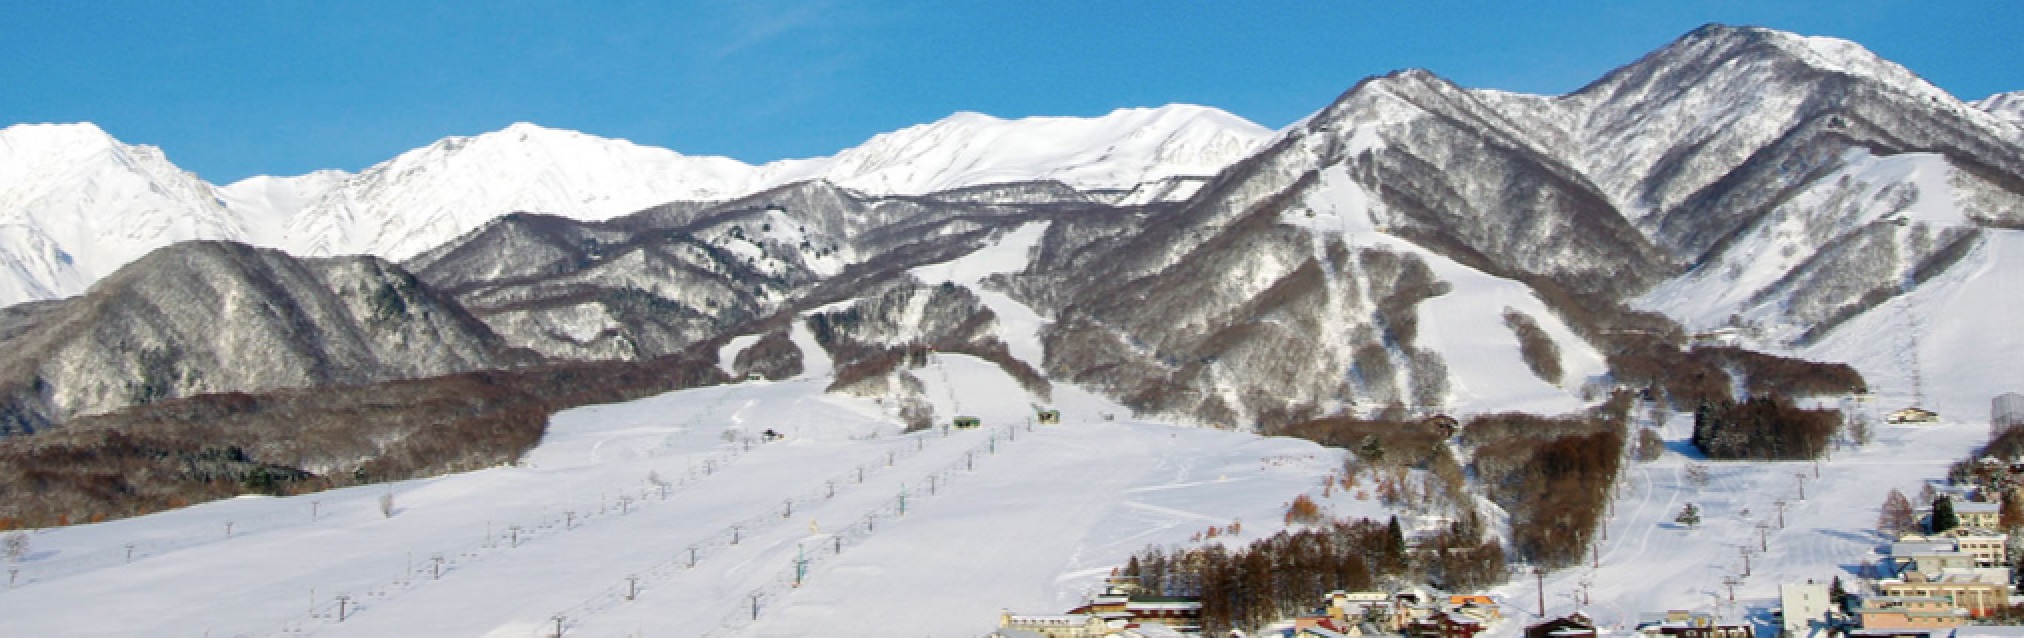 長野の栂池高原スキー場、2020～2021冬季シーズンの営業開始。ベースセンターを新設しリフト券の事前販売も - トラベル Watch